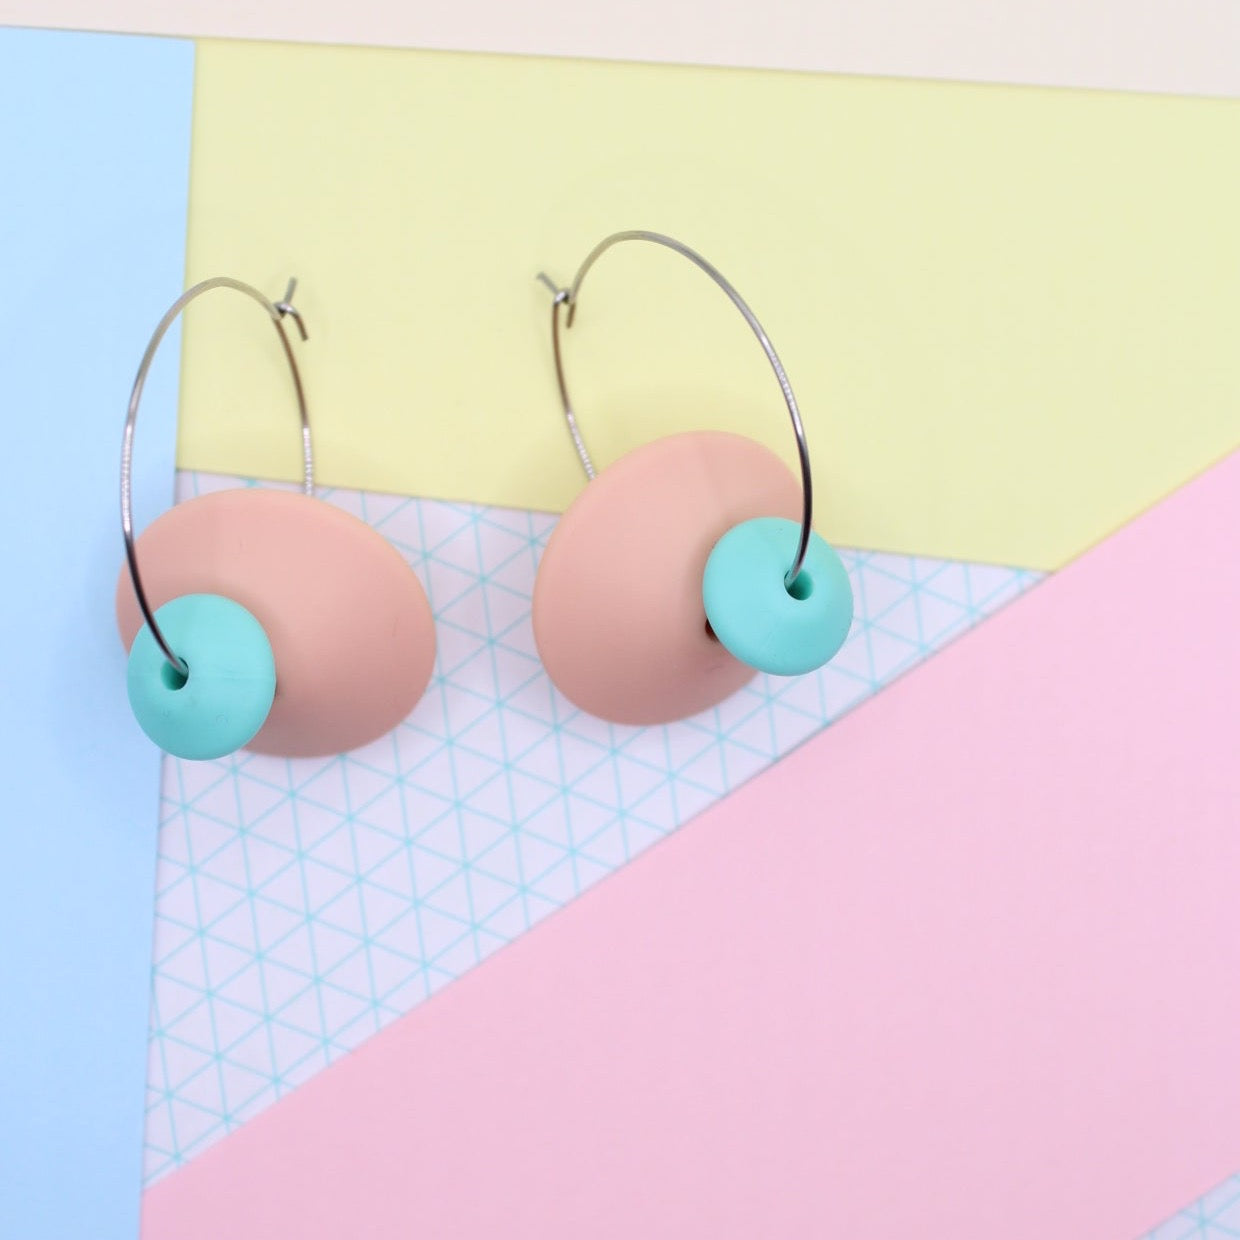 Statement Silicone Hoop Dangle Earrings - Peachy Pink. 30mm Hoops